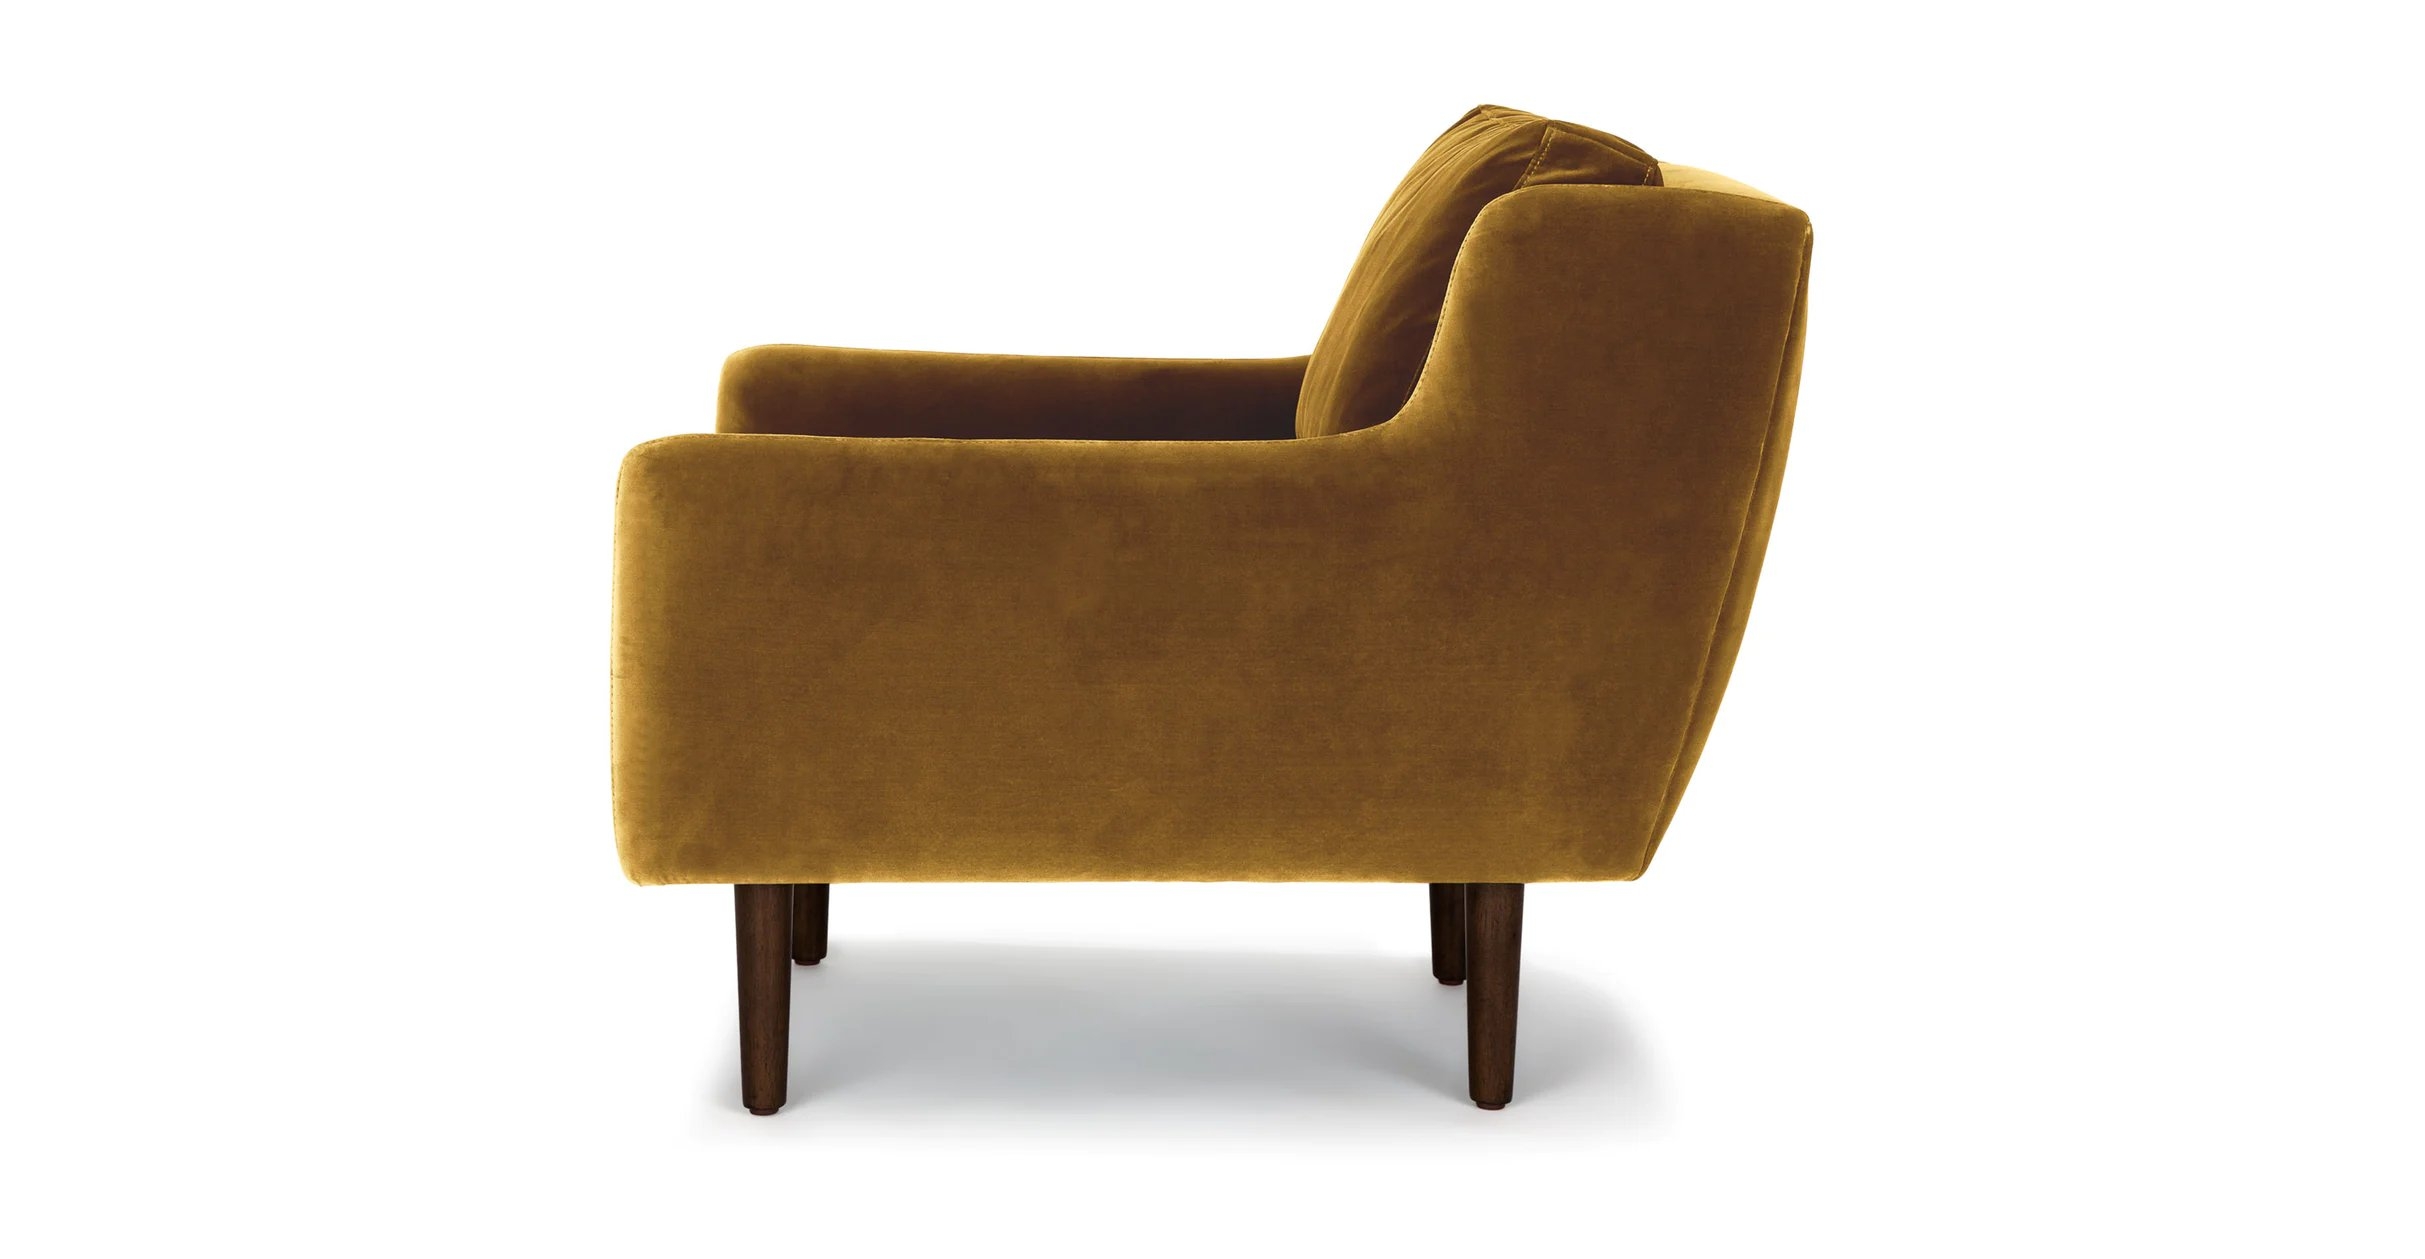 Matrix Lounge Chair - Yellow Gold and Walnut - Image 3